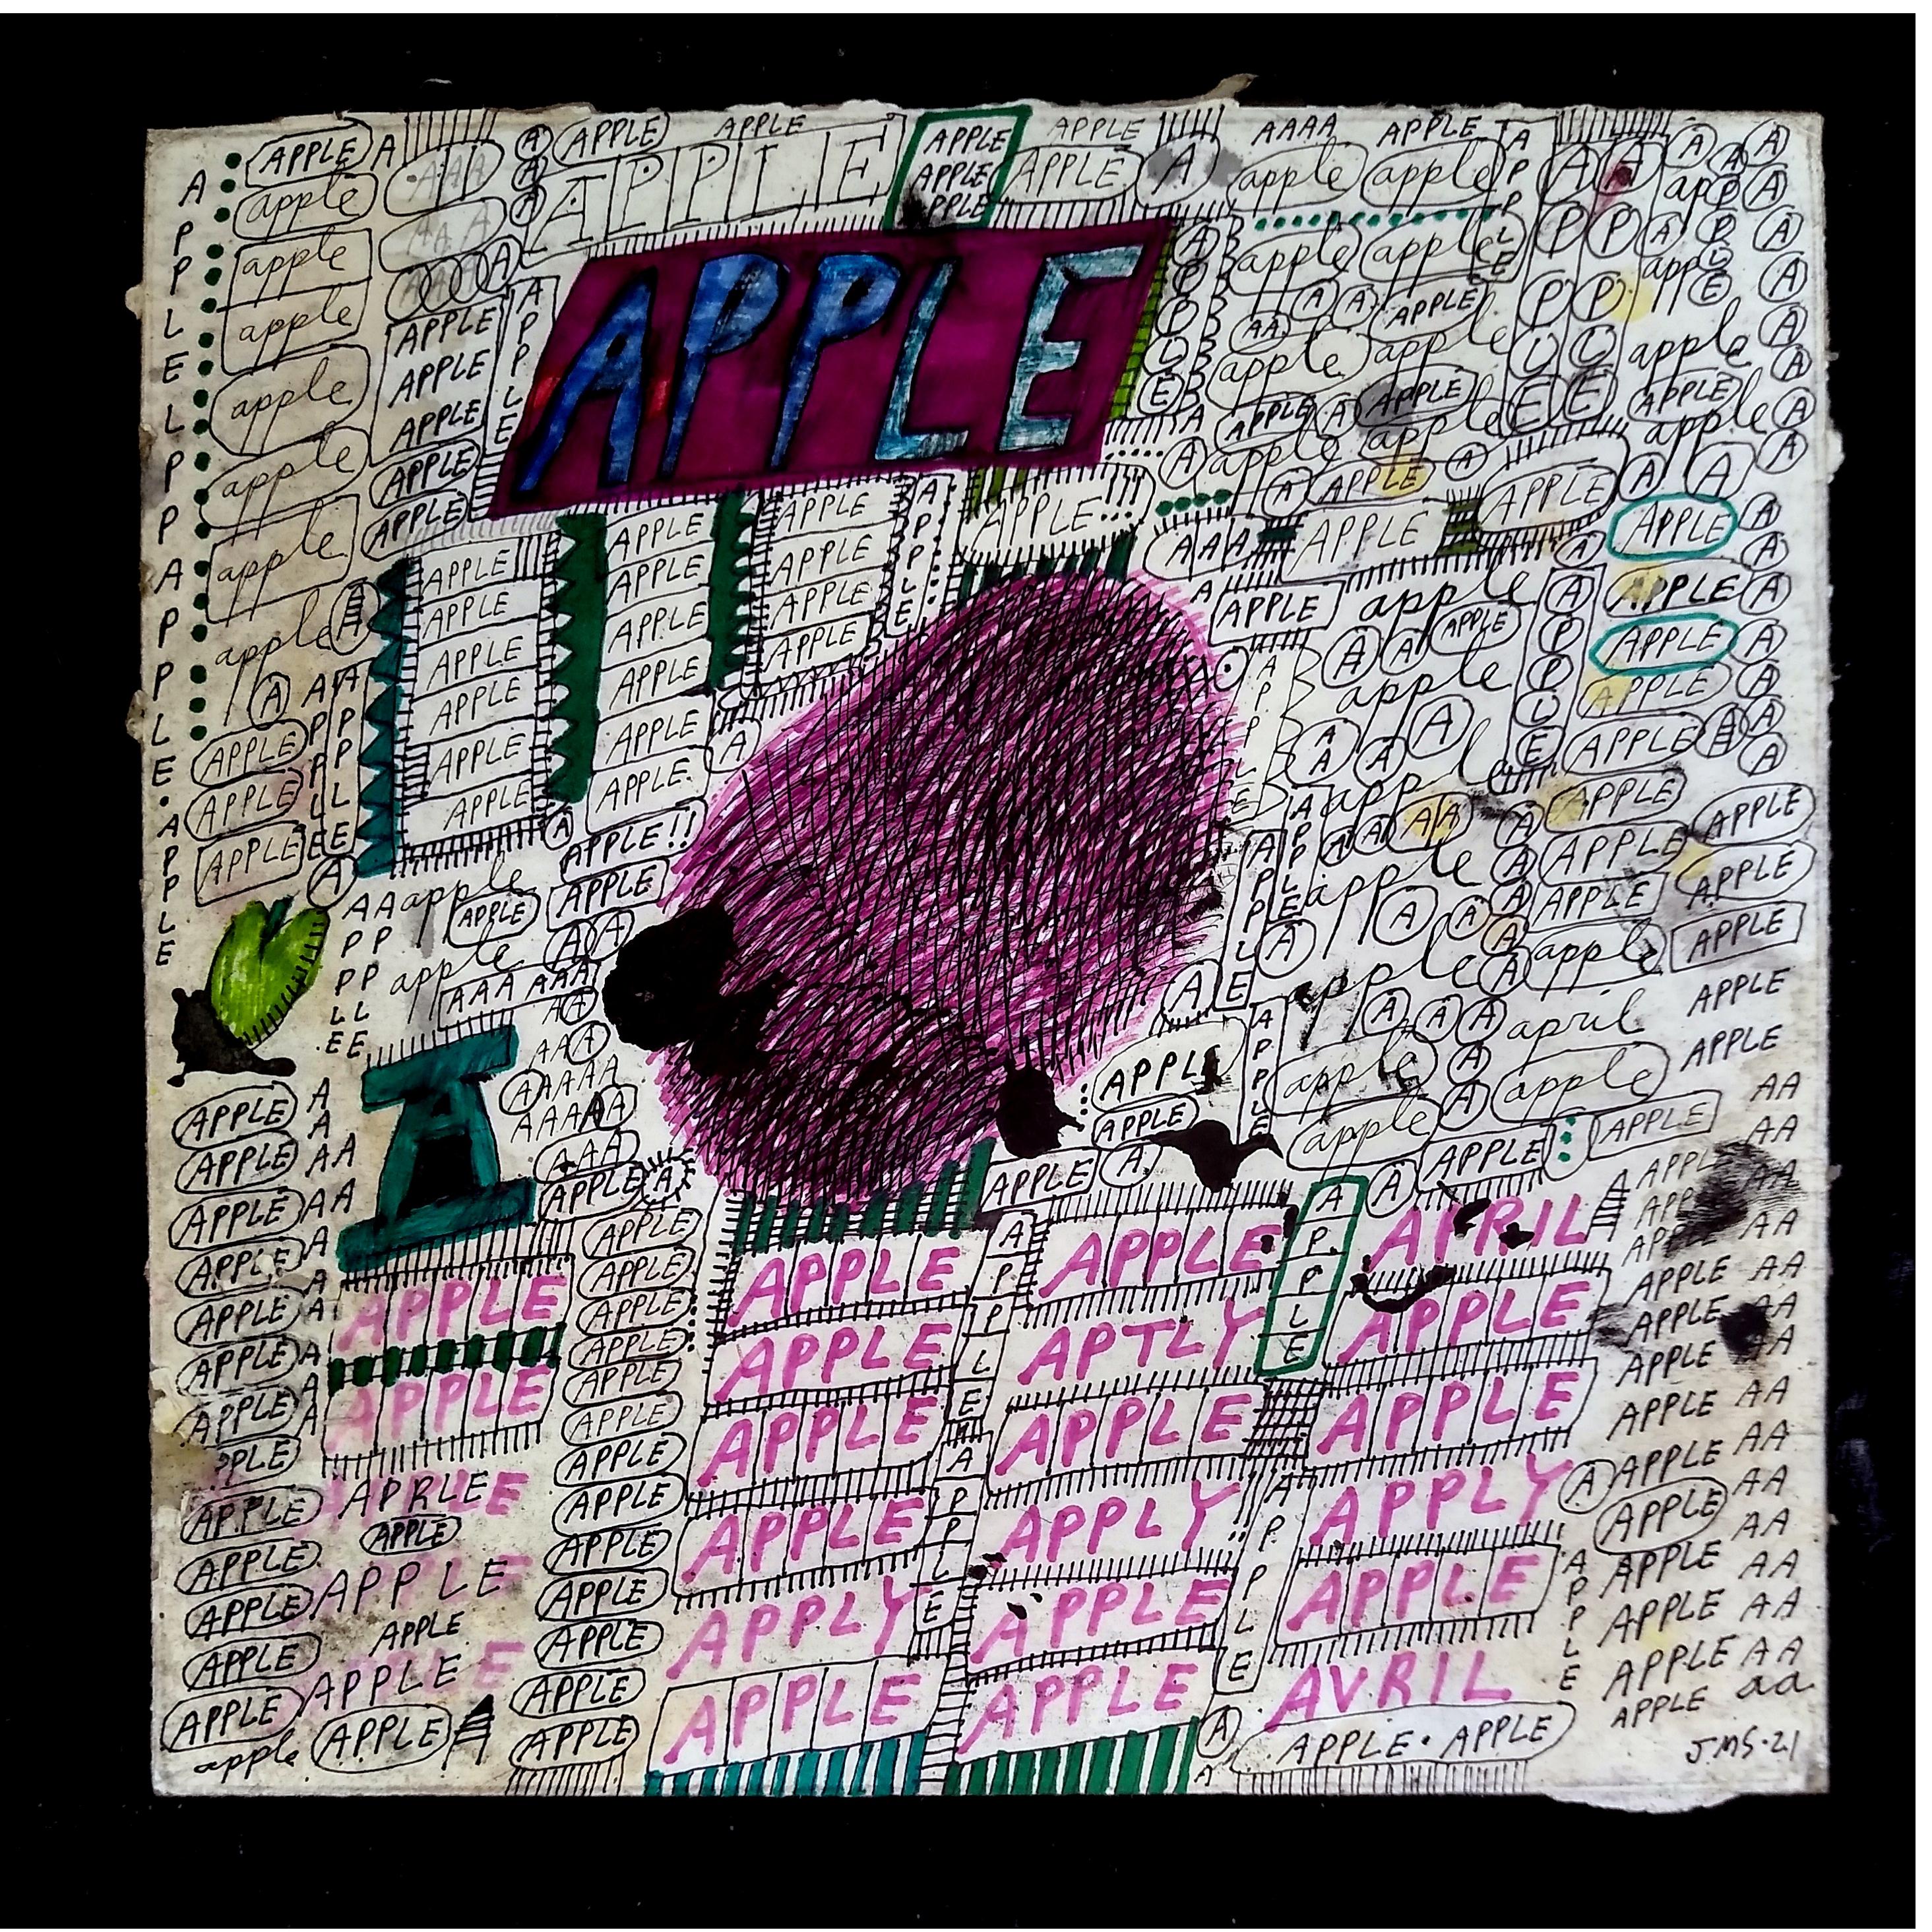 Jon Sarkin - "Apple" - 12.5" x 12.5" - Mixed media, 2021